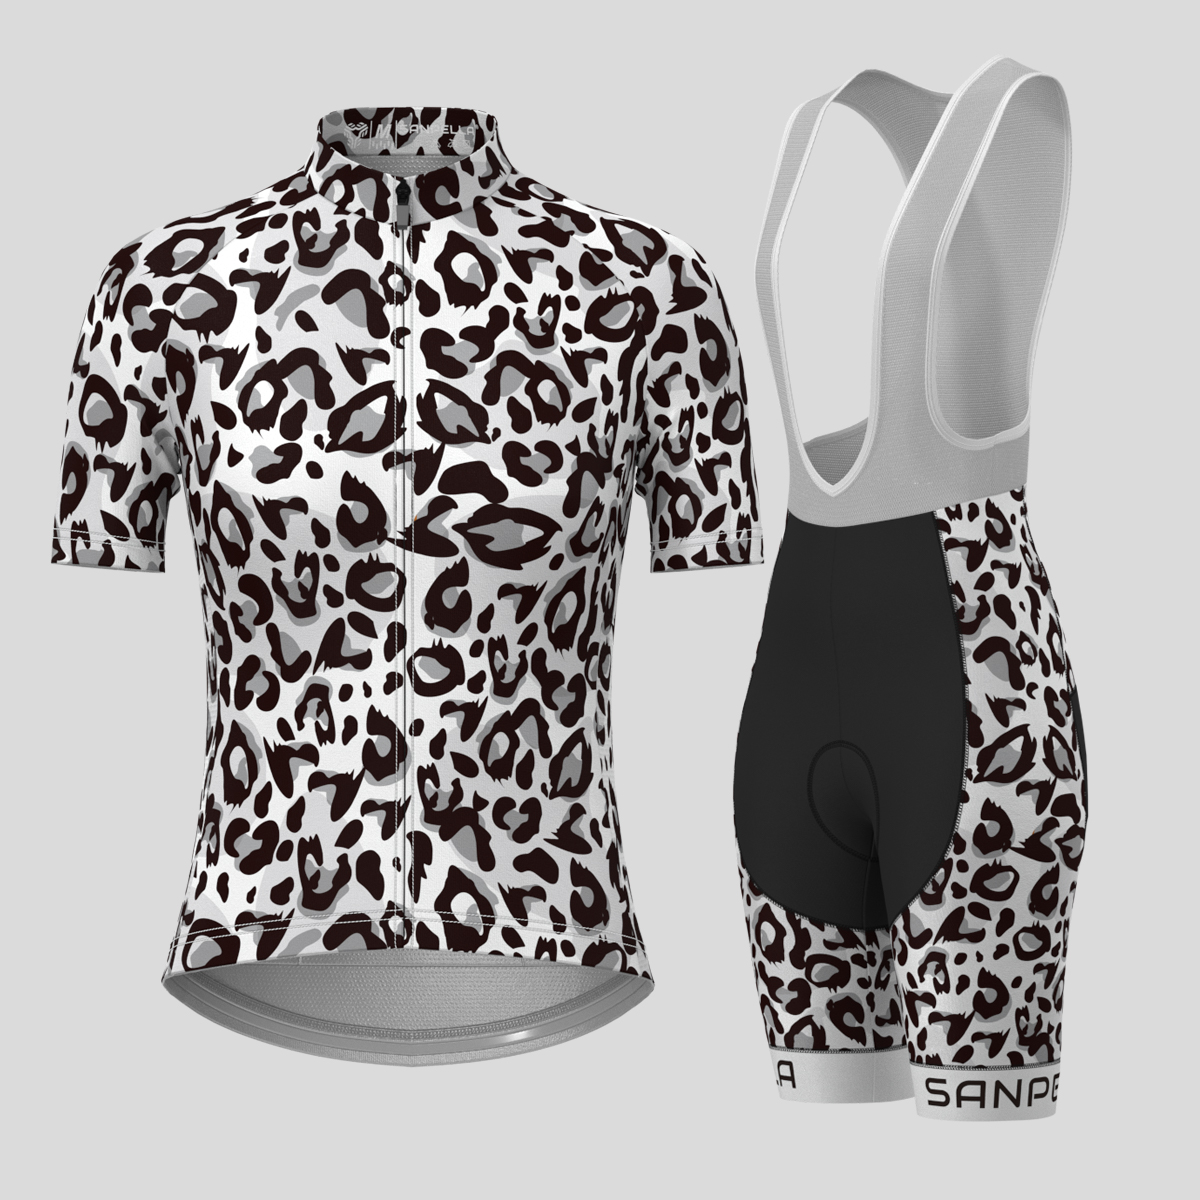 Leopard Print Women's Cycling Kit - Black/White